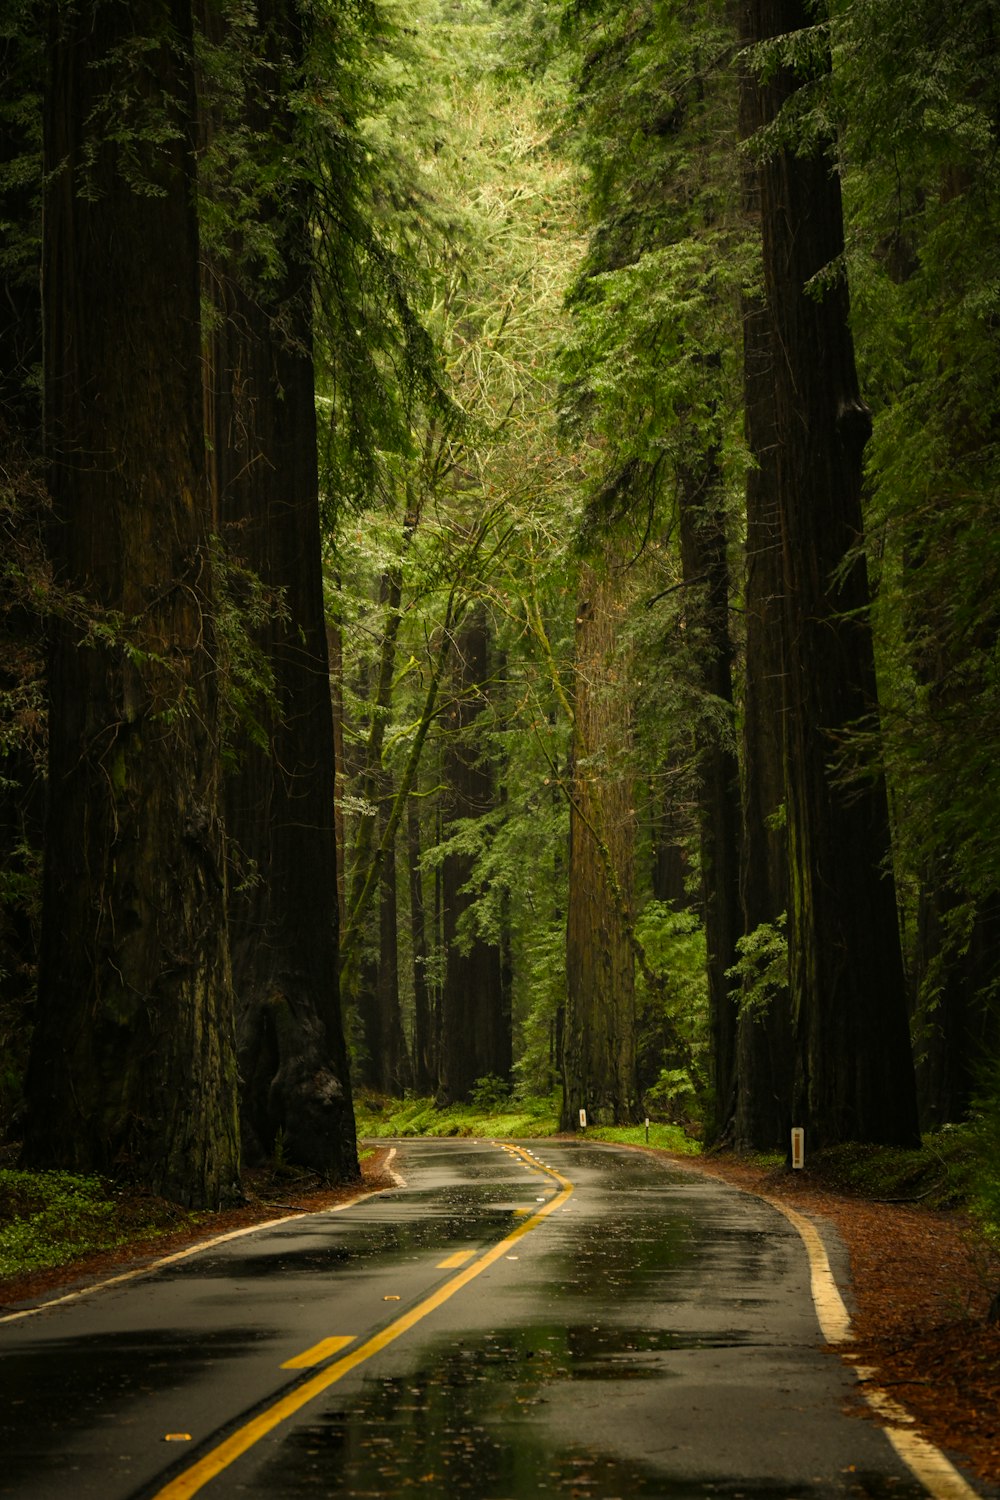 una strada in mezzo a una foresta con alberi ad alto fusto